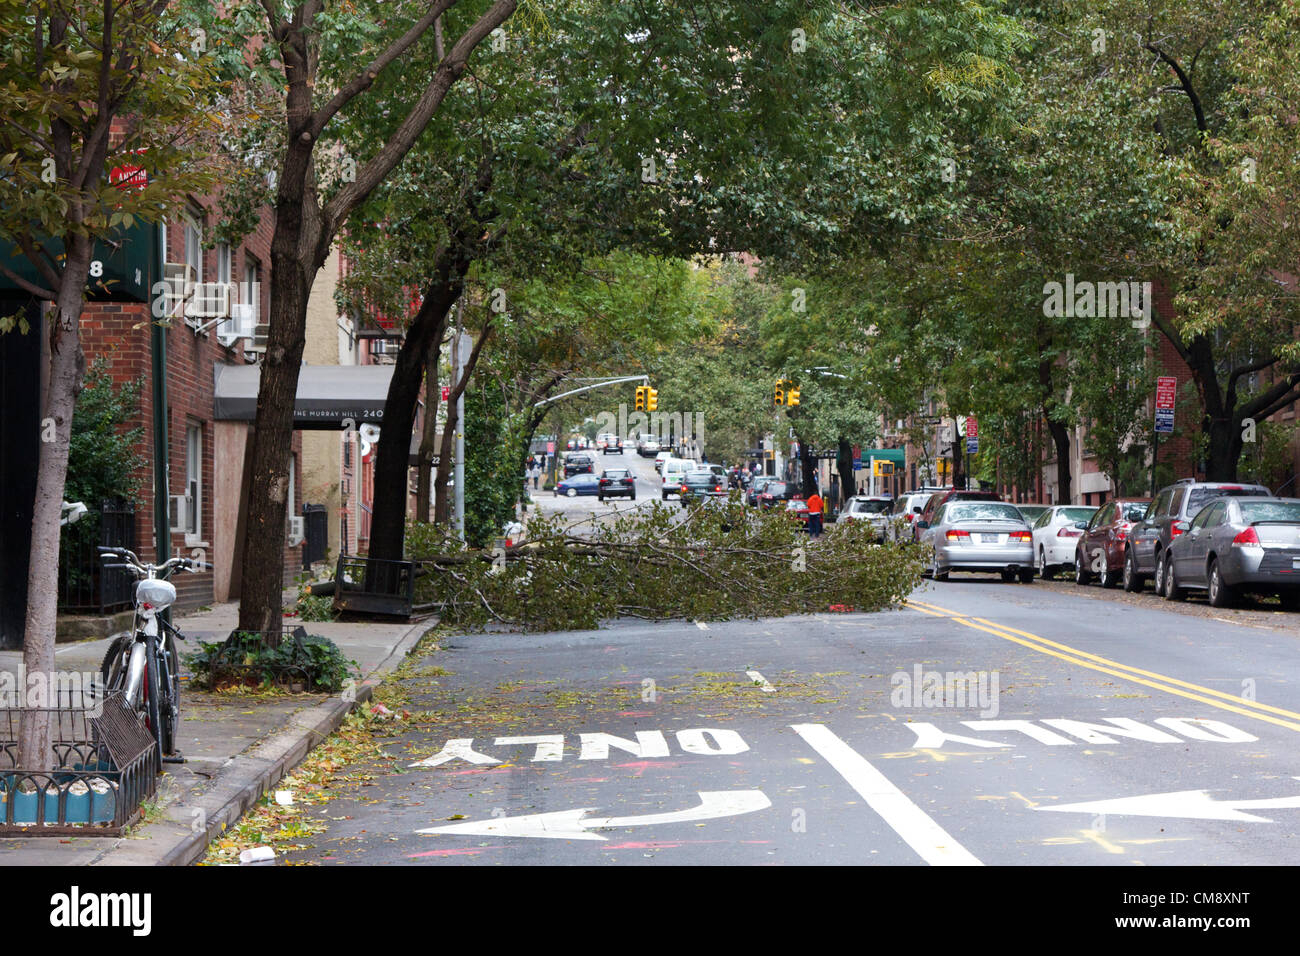 Stati Uniti d'America, NEW YORK, NY - 30 ottobre 2012: la caduta di alberi e rami può essere visto intorno a New York, NY, il 30 ottobre 2012, il giorno dopo l uragano Sandy ha colpito la città che non dorme mai. Foto Stock